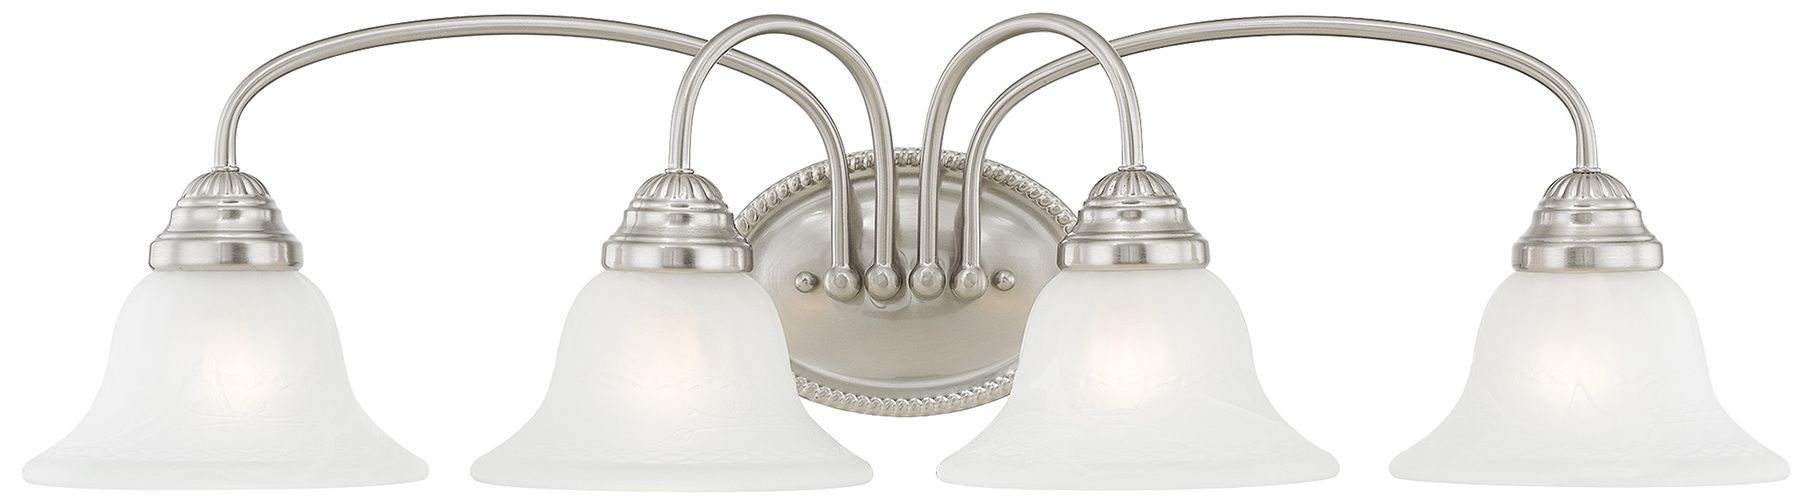 Edgemont 4-Light Brushed Nickel Bell Vanity Light